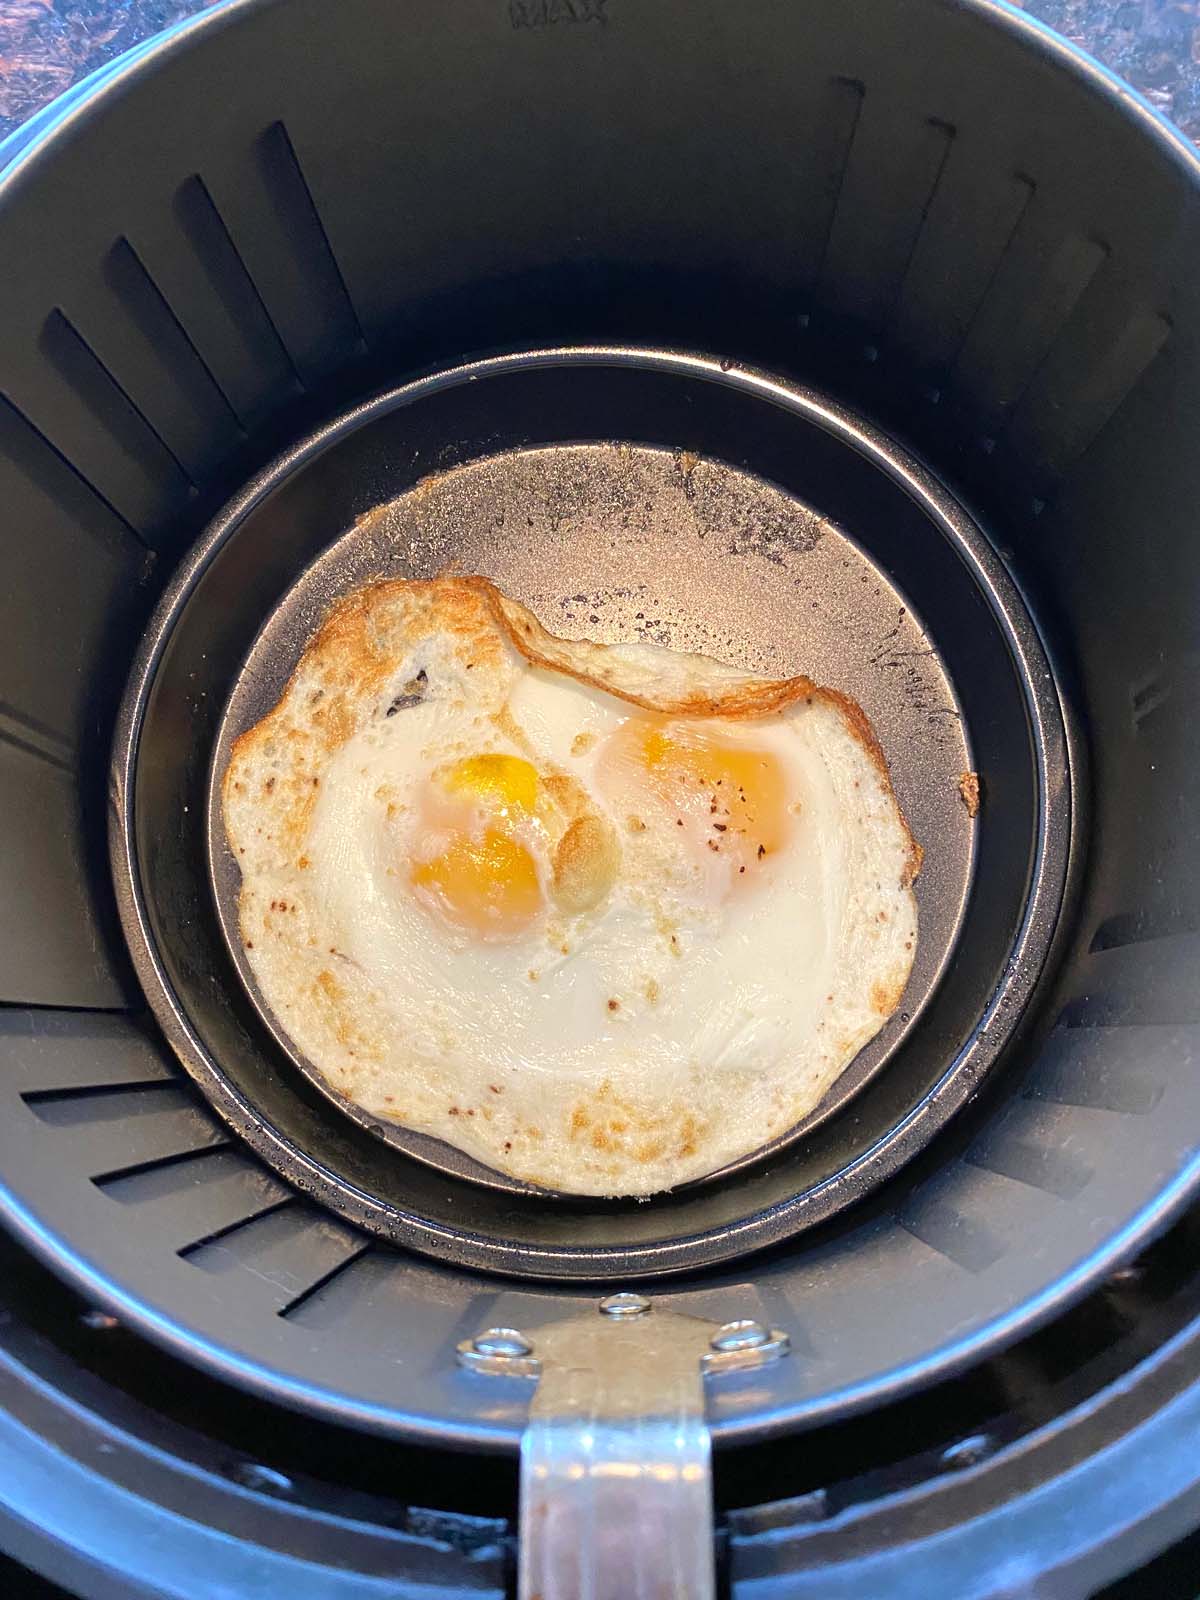 https://www.melaniecooks.com/wp-content/uploads/2022/03/Air-Fryer-Fried-Eggs-4.jpg